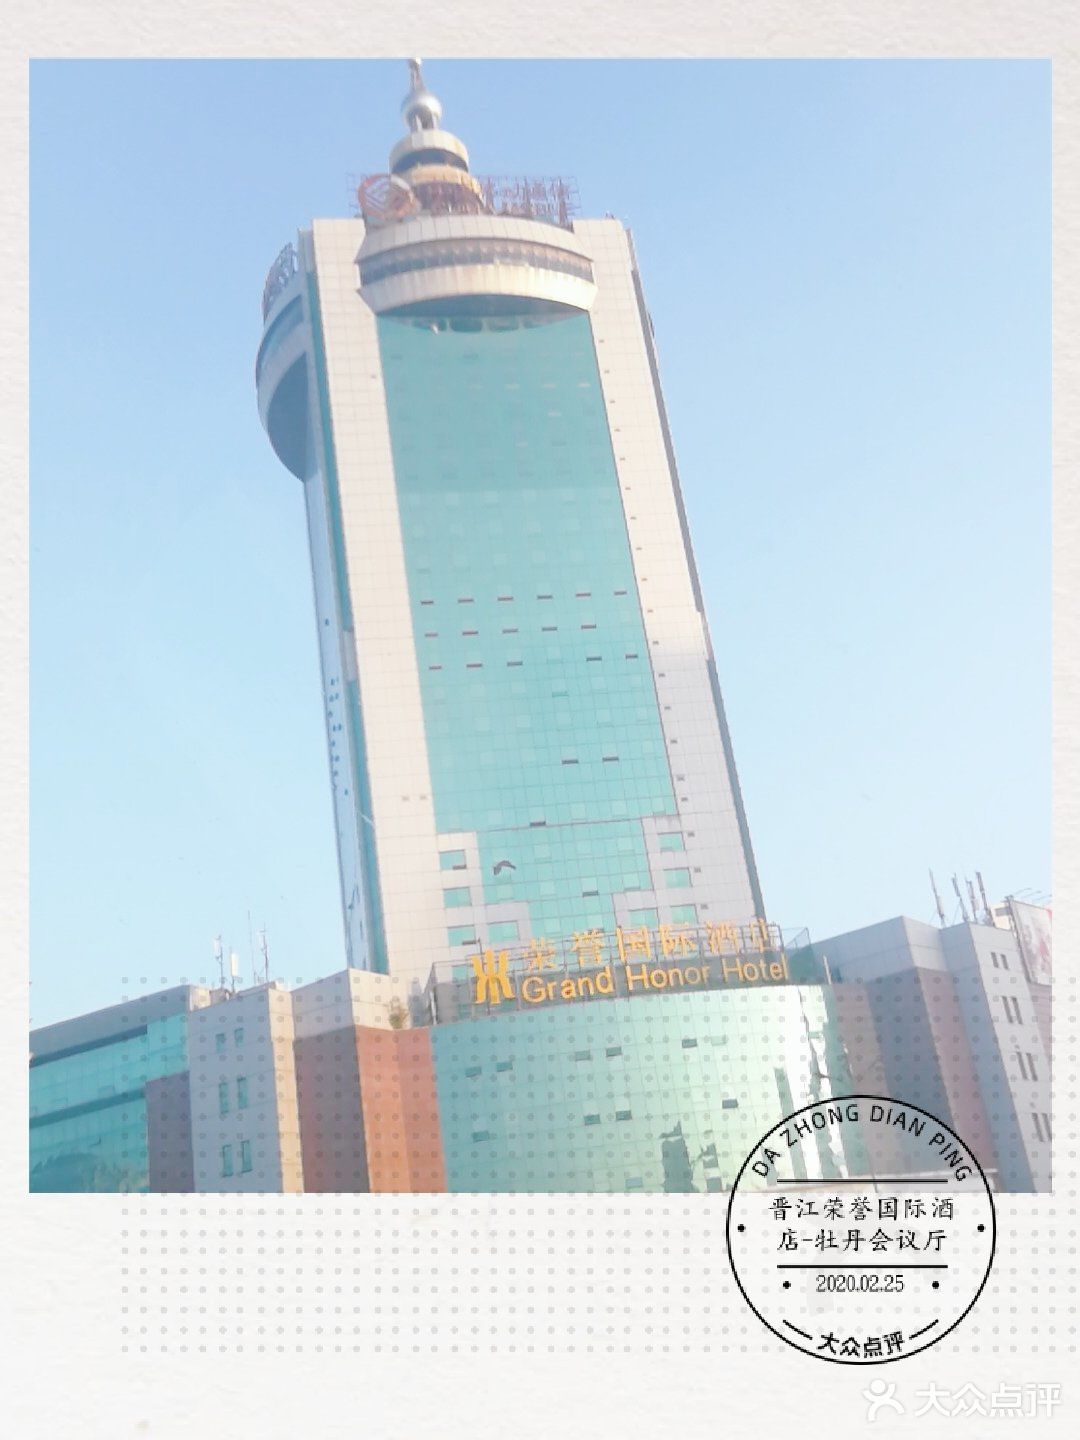         晋江荣誉国际酒店-牡丹